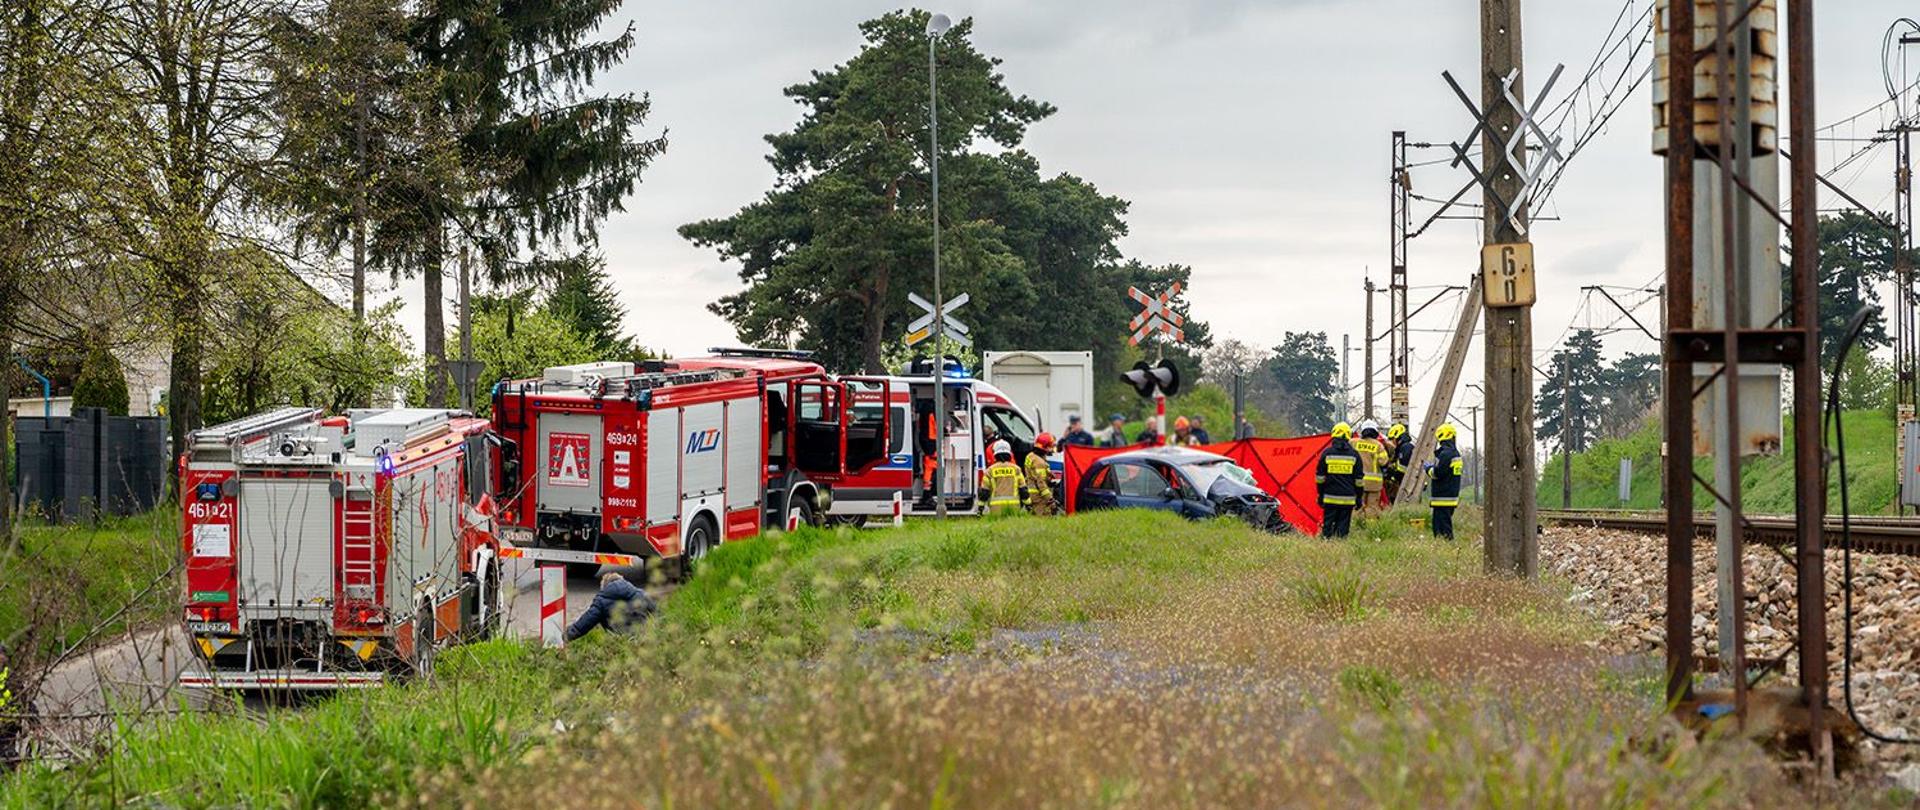 Na zdjęciu widoczny rozbity samochód osobowy przy na przejeździe kolejowym, obok samochody pożarnicze na jezdni